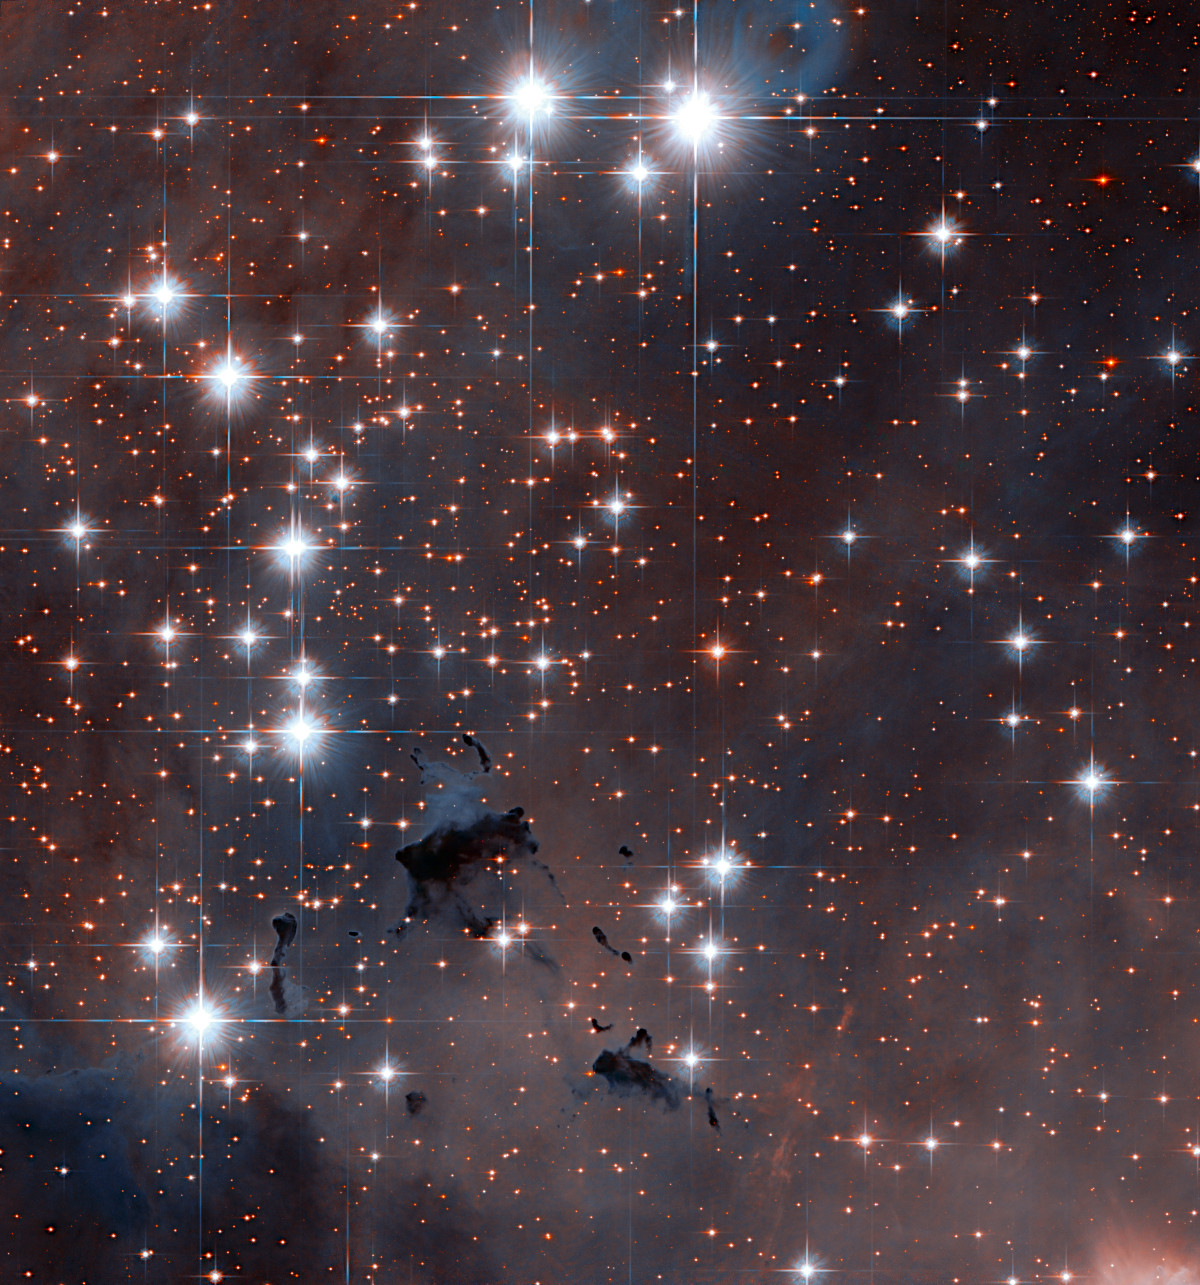 ハッブル宇宙望遠鏡がとらえた わし星雲にある散開星団ngc 6611 アストロピクス